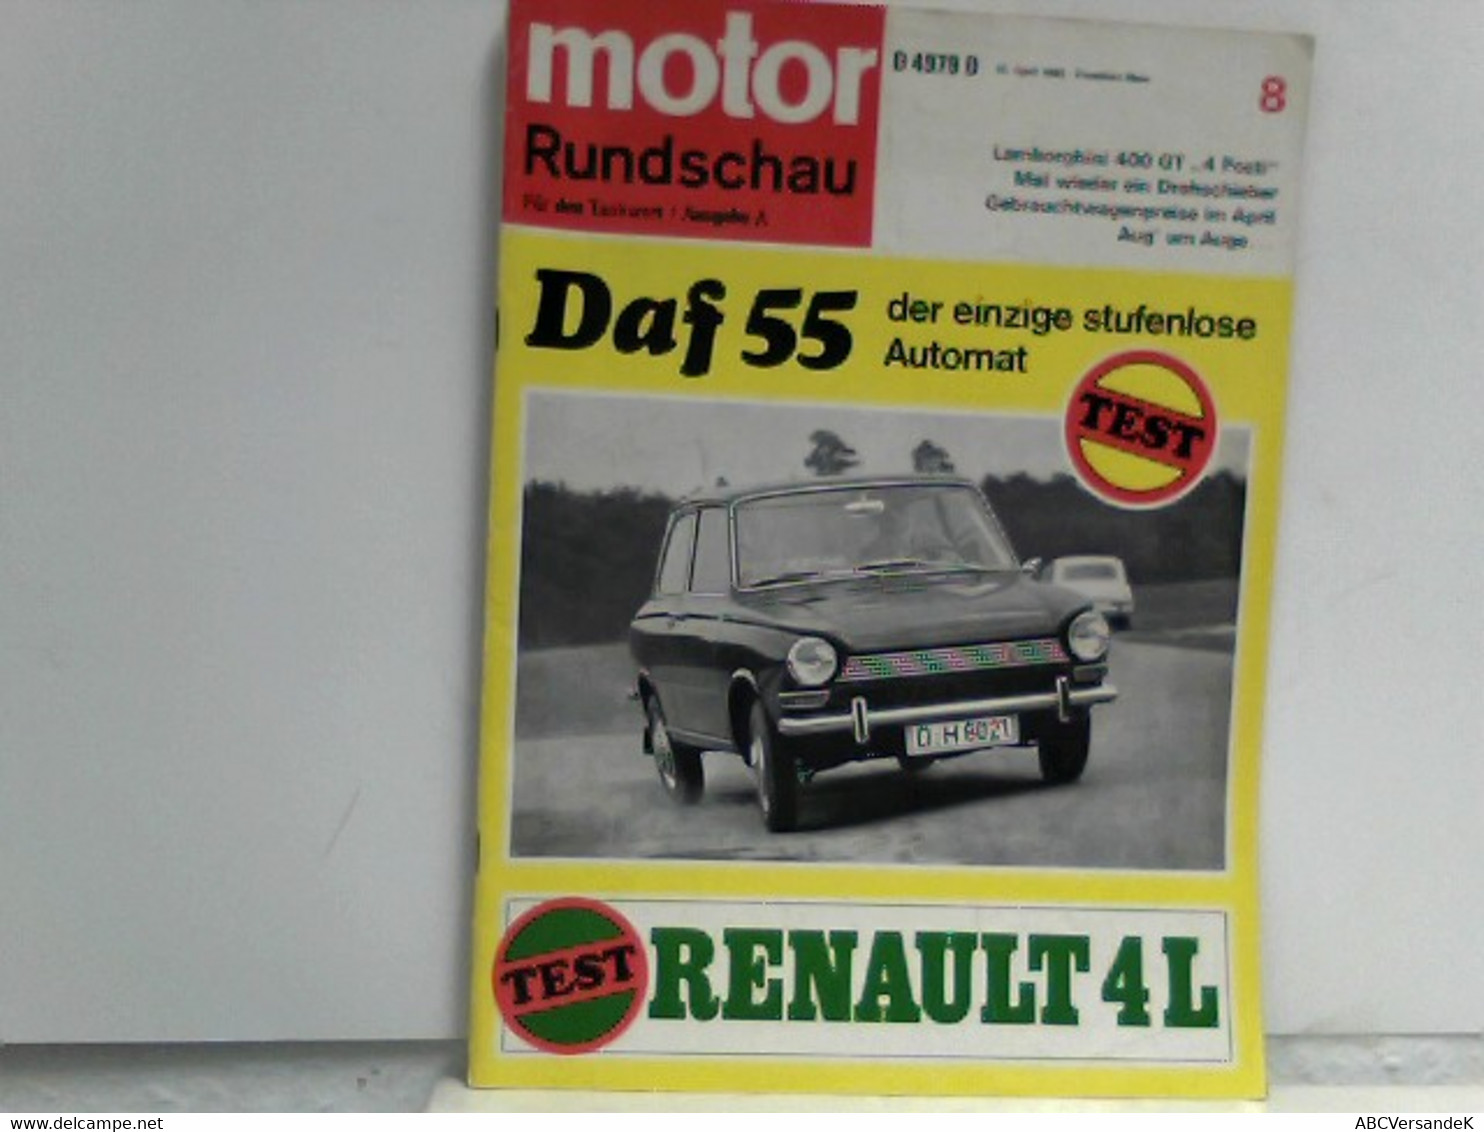 Motor Rundschau: Für Den Tankwart/Ausgabe A, Nr. 8, Daf 55 Der Einzige Stufenlose Automat - Verkehr